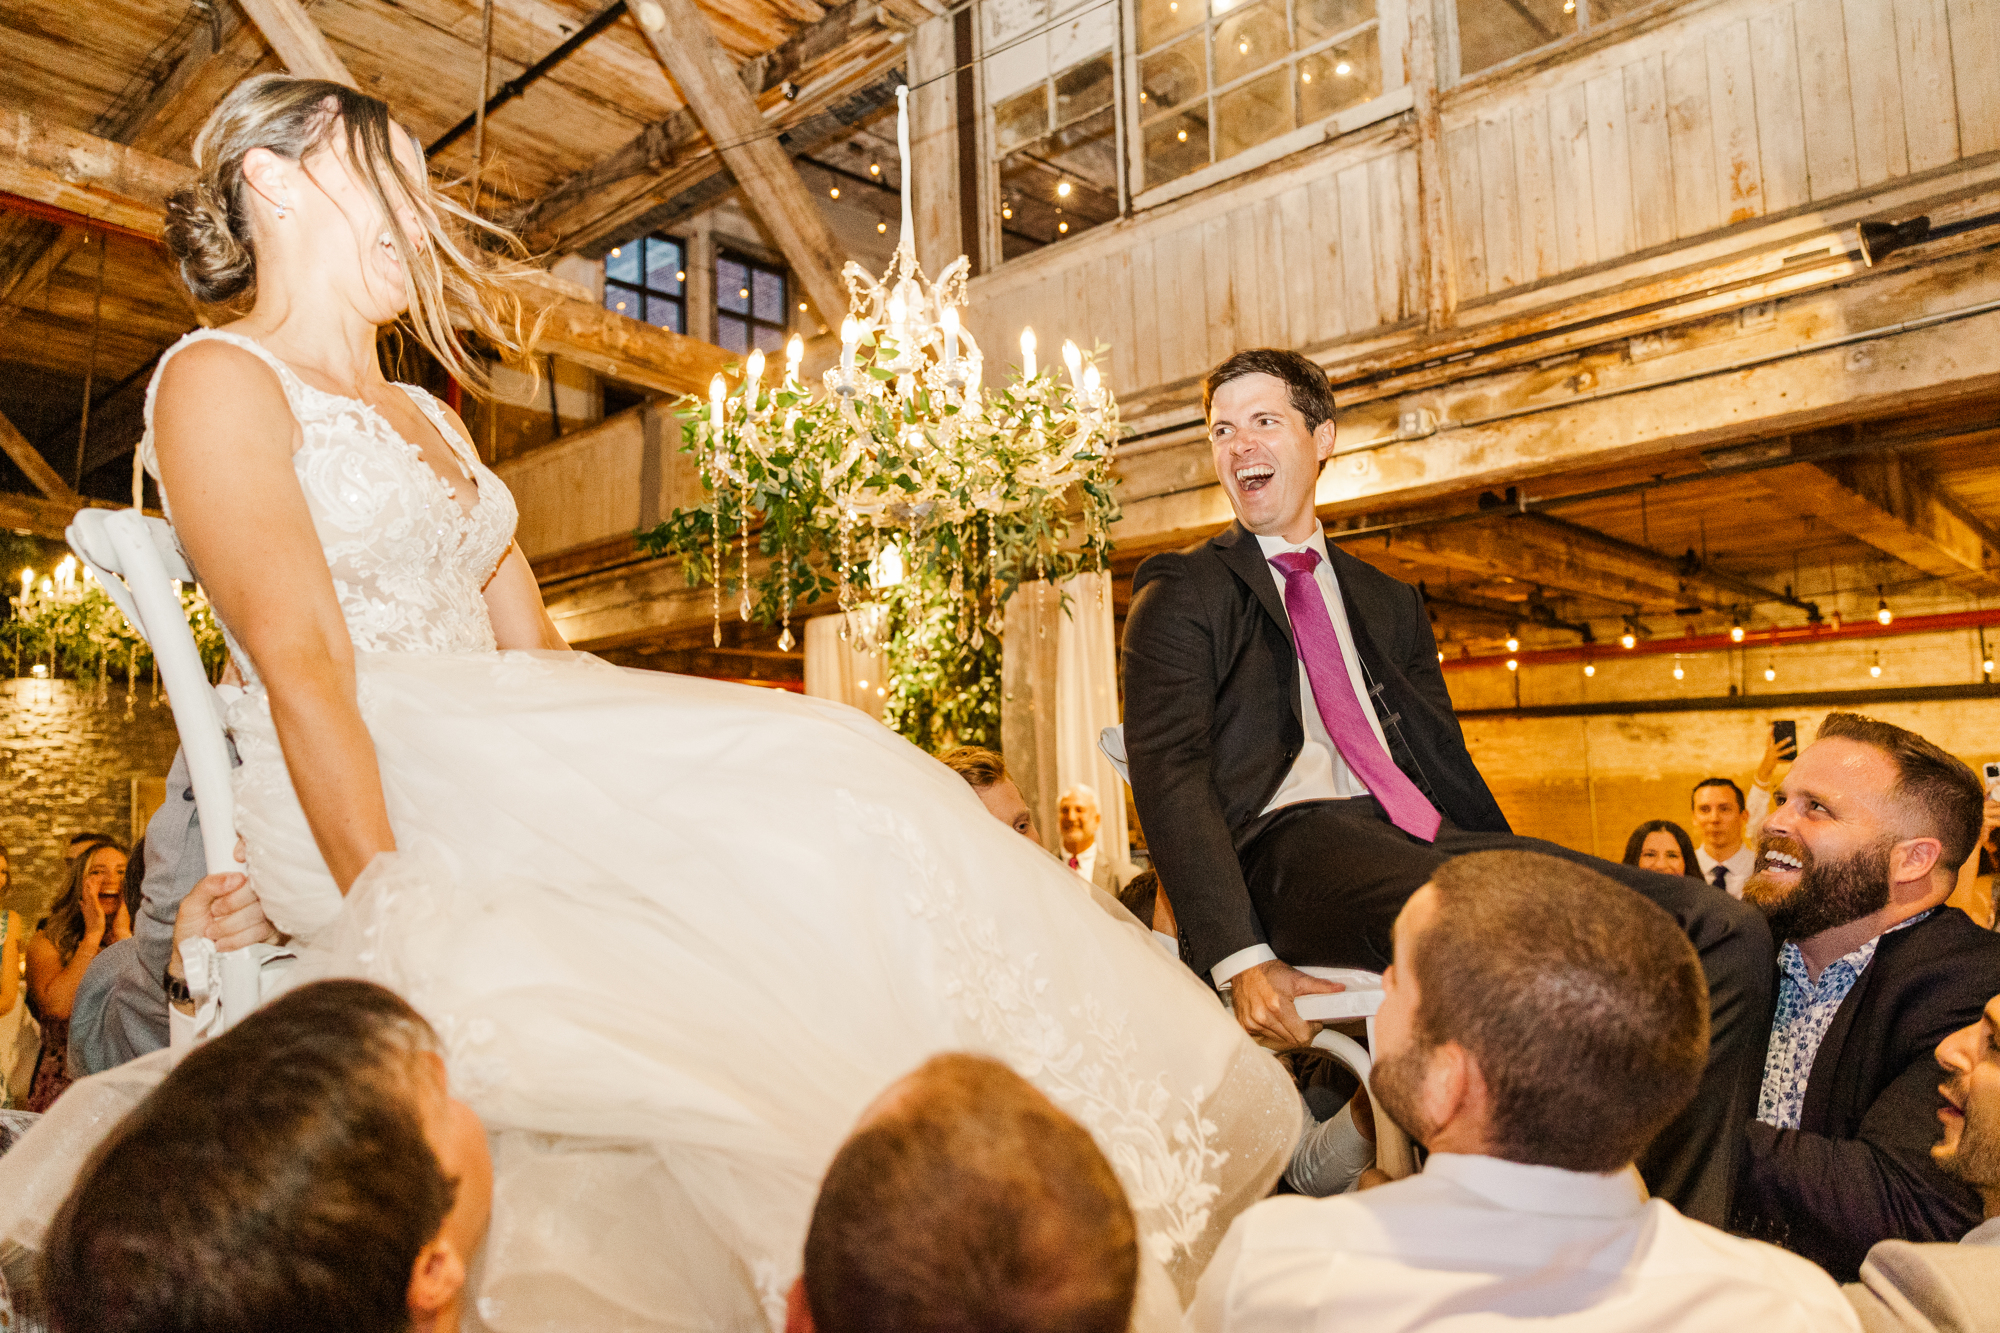 Candid Greenpoint Loft Wedding in Brooklyn